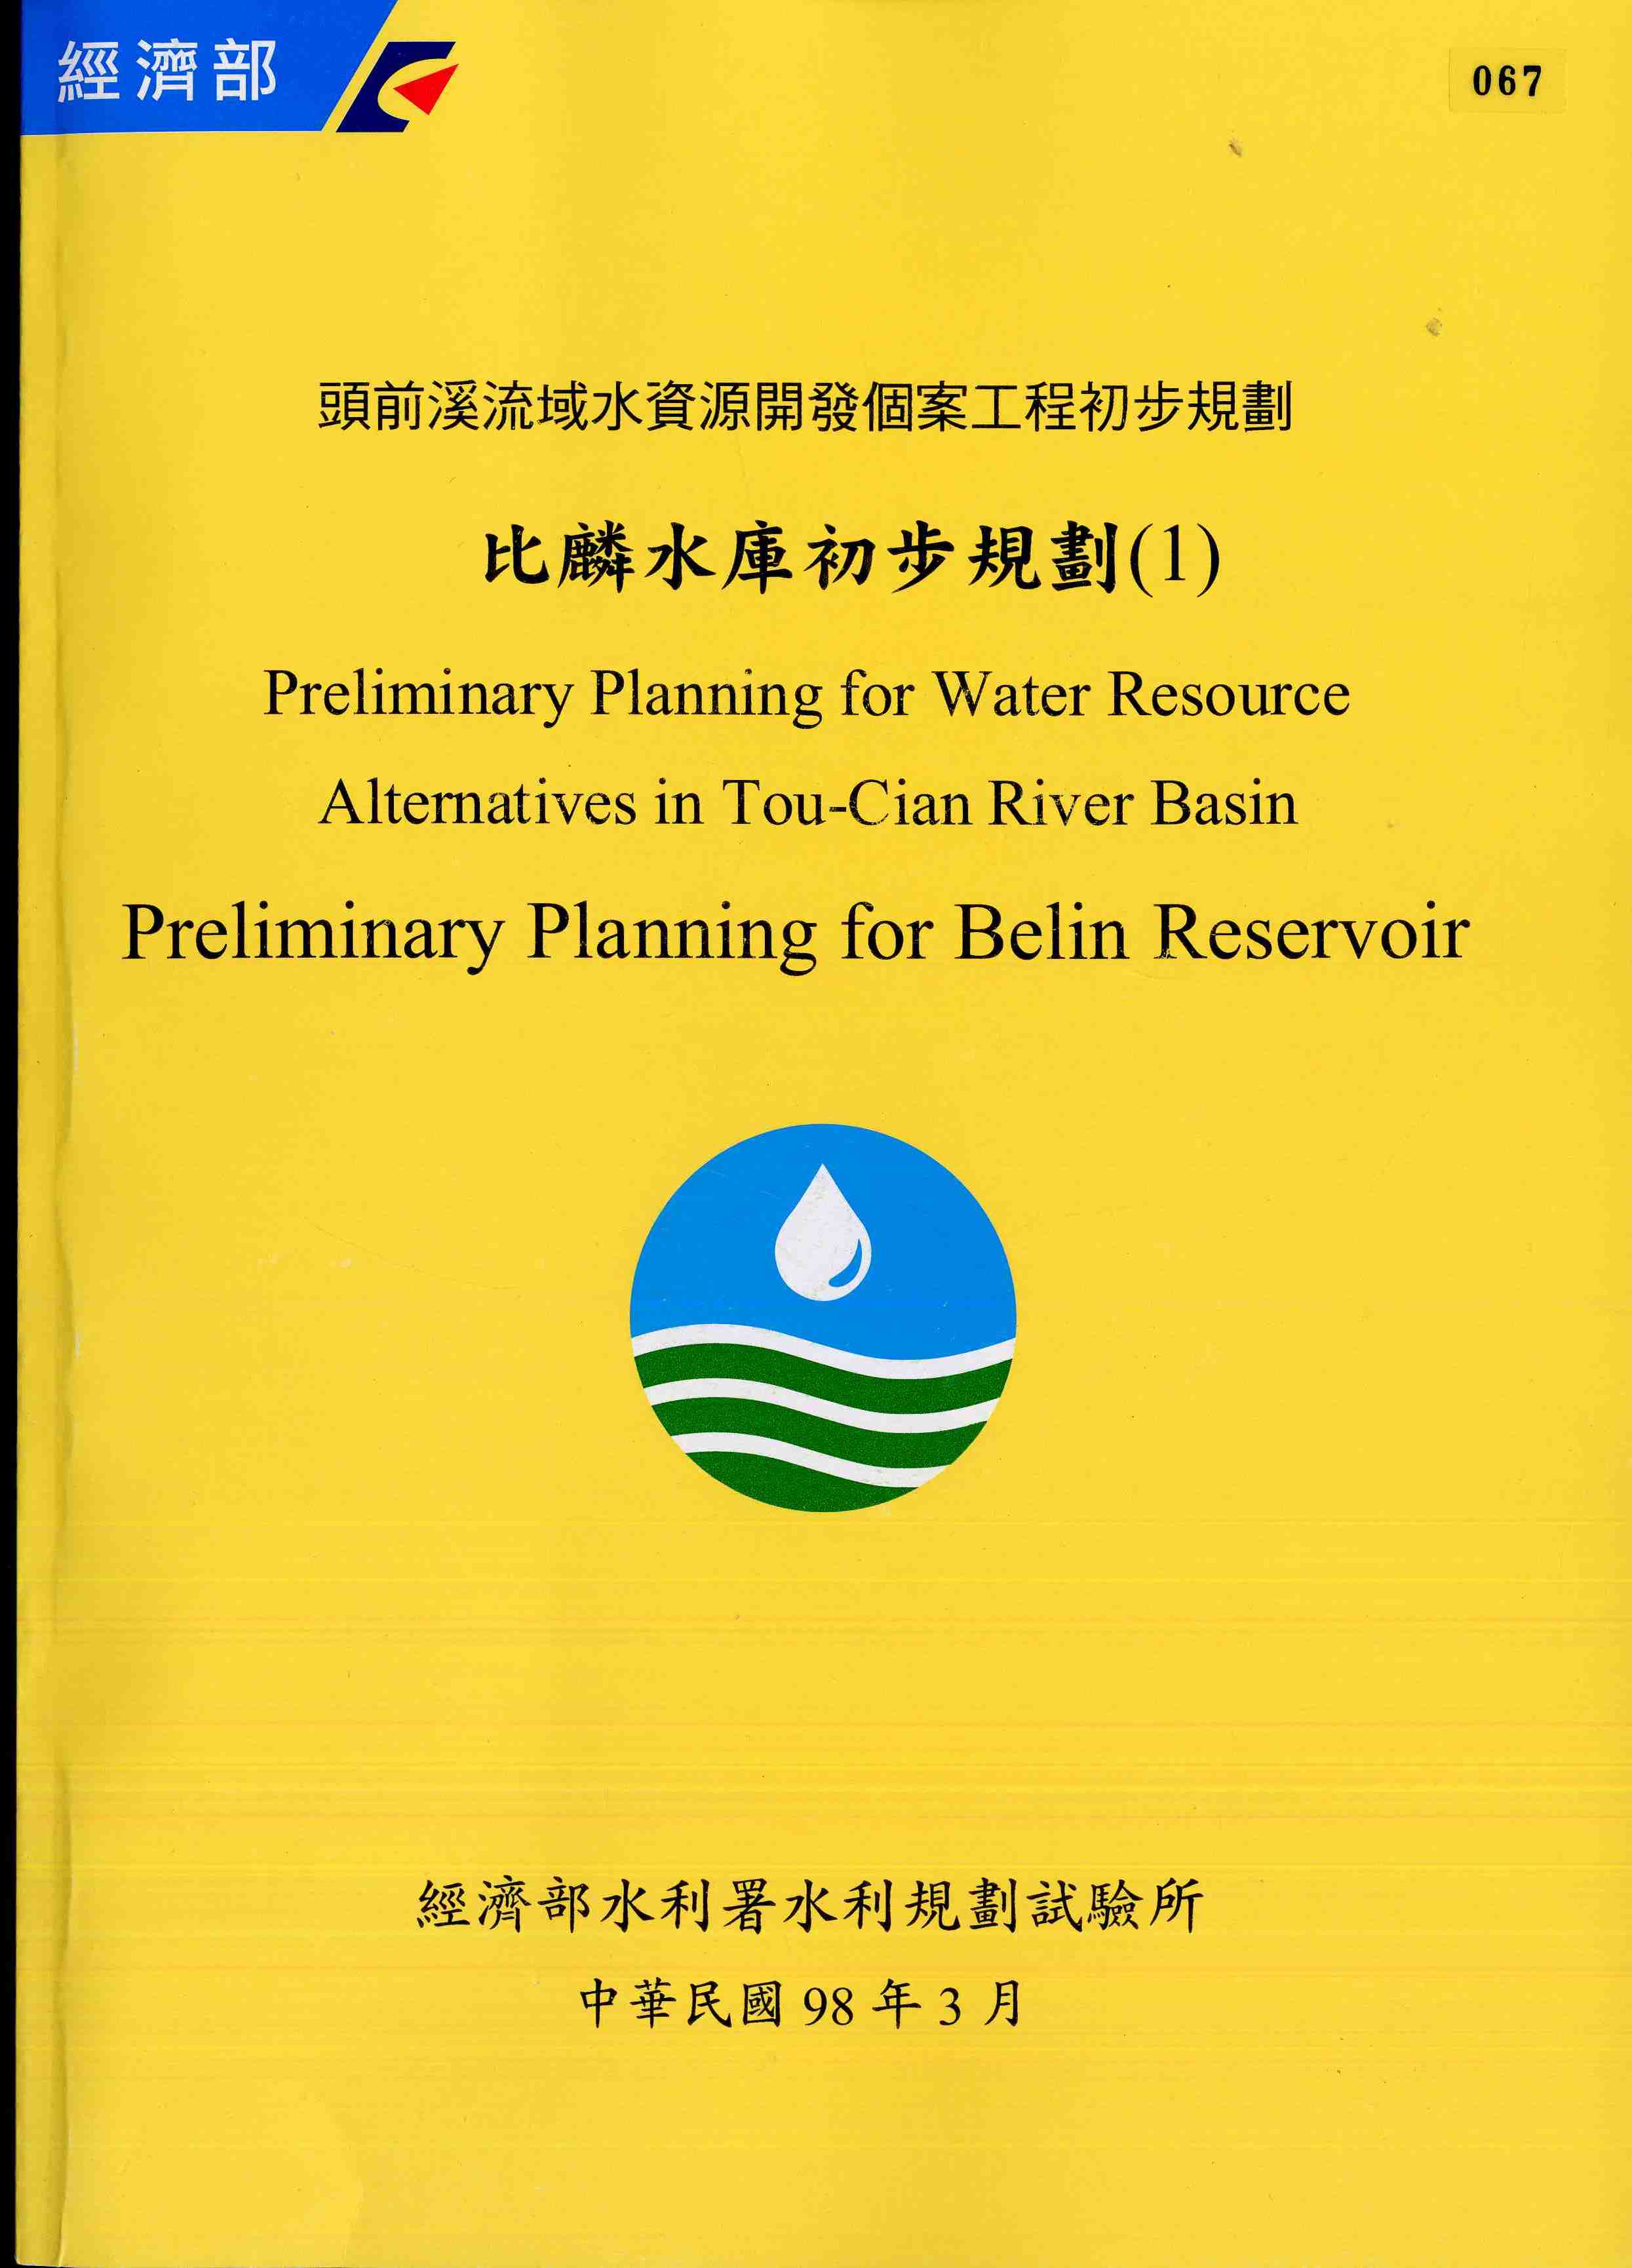 頭前溪流域水資源開發個案工程初步規劃-比麟水庫初步規劃(1)